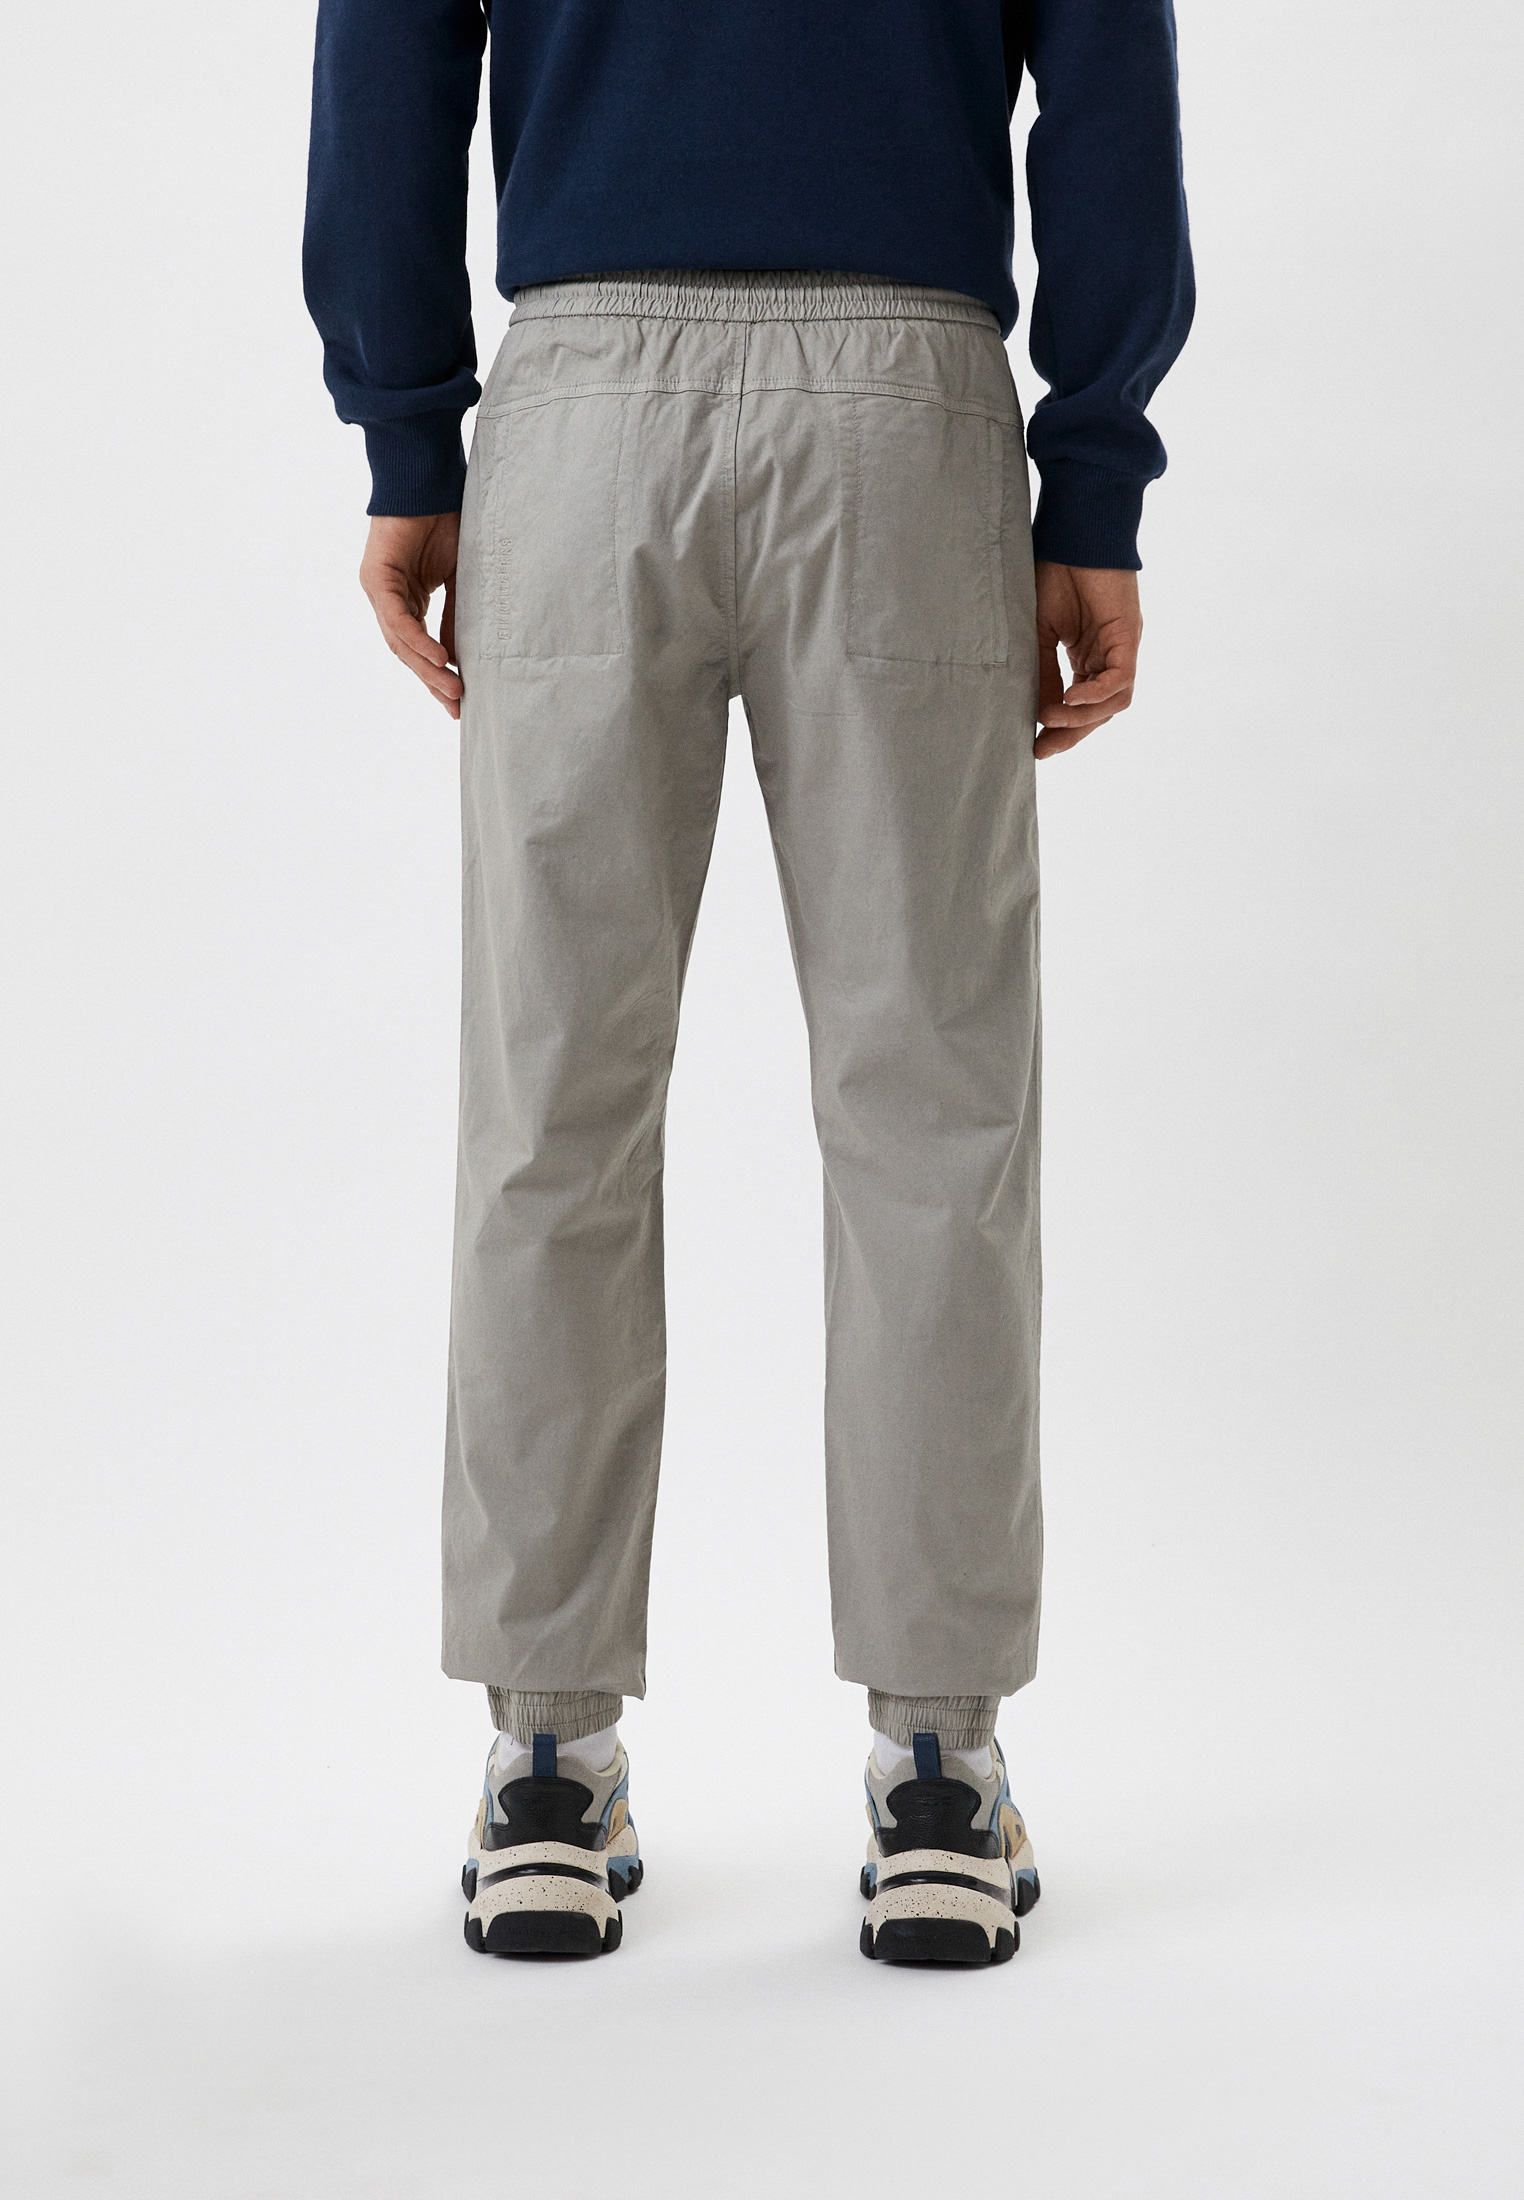 Мужские повседневные брюки Bikkembergs (Биккембергс) CP10801S3813: изображение 3